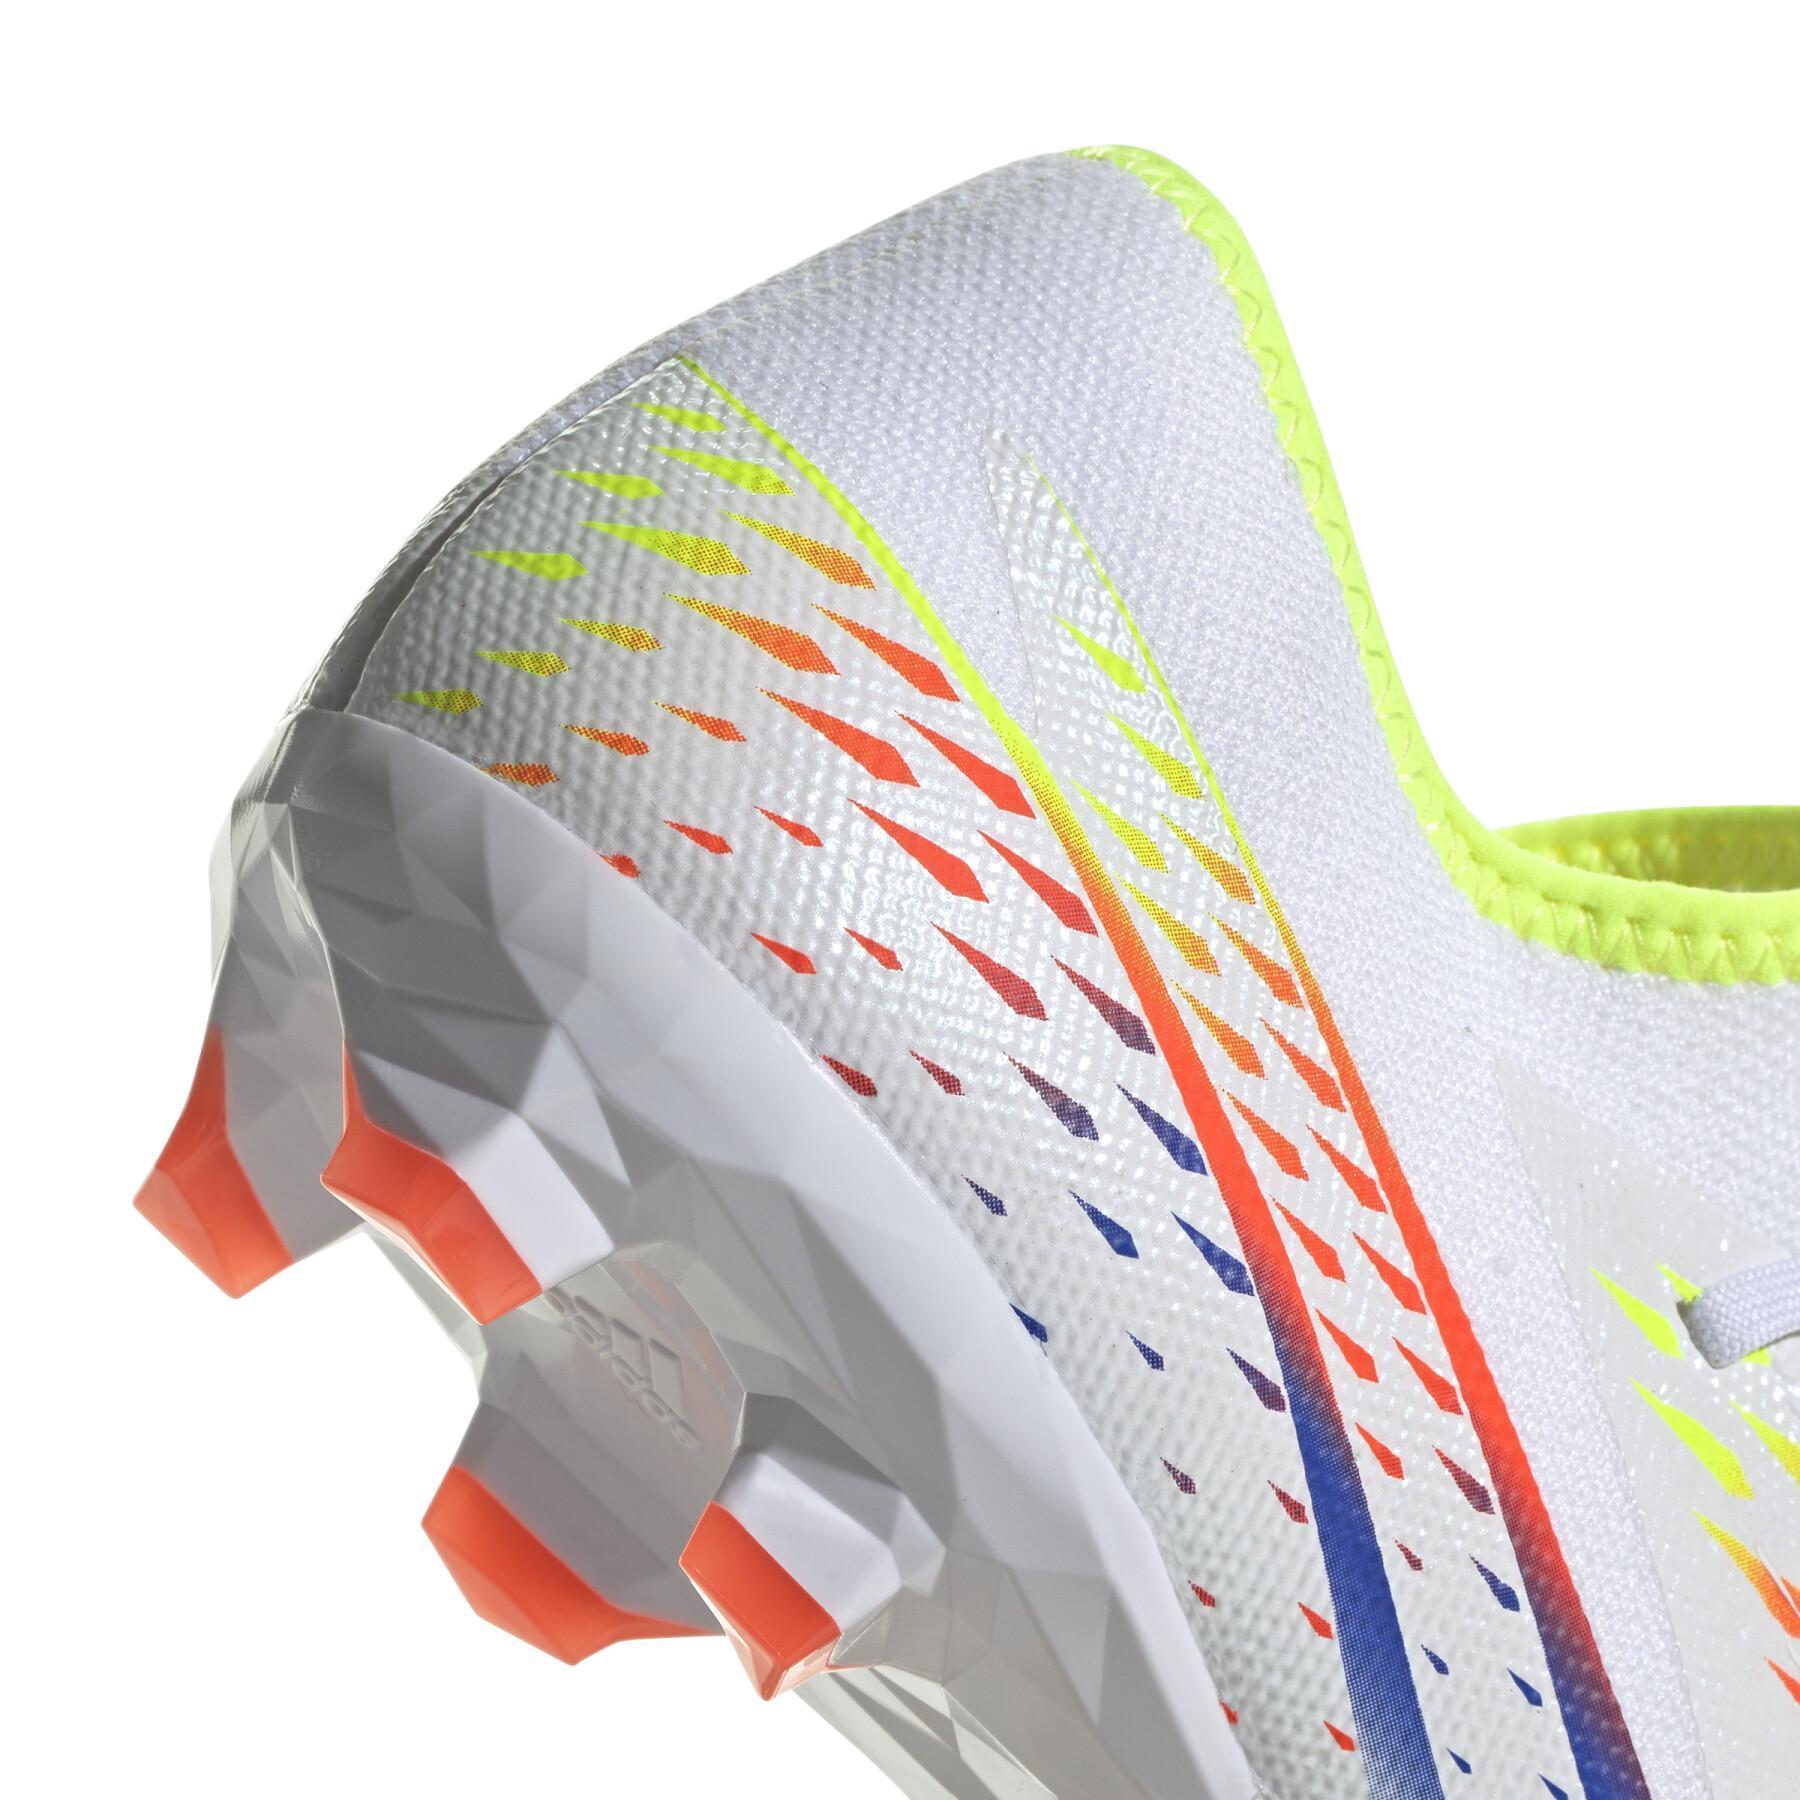 Soccer shoes adidas Predator Edge.3 Low FG - Al Rihla